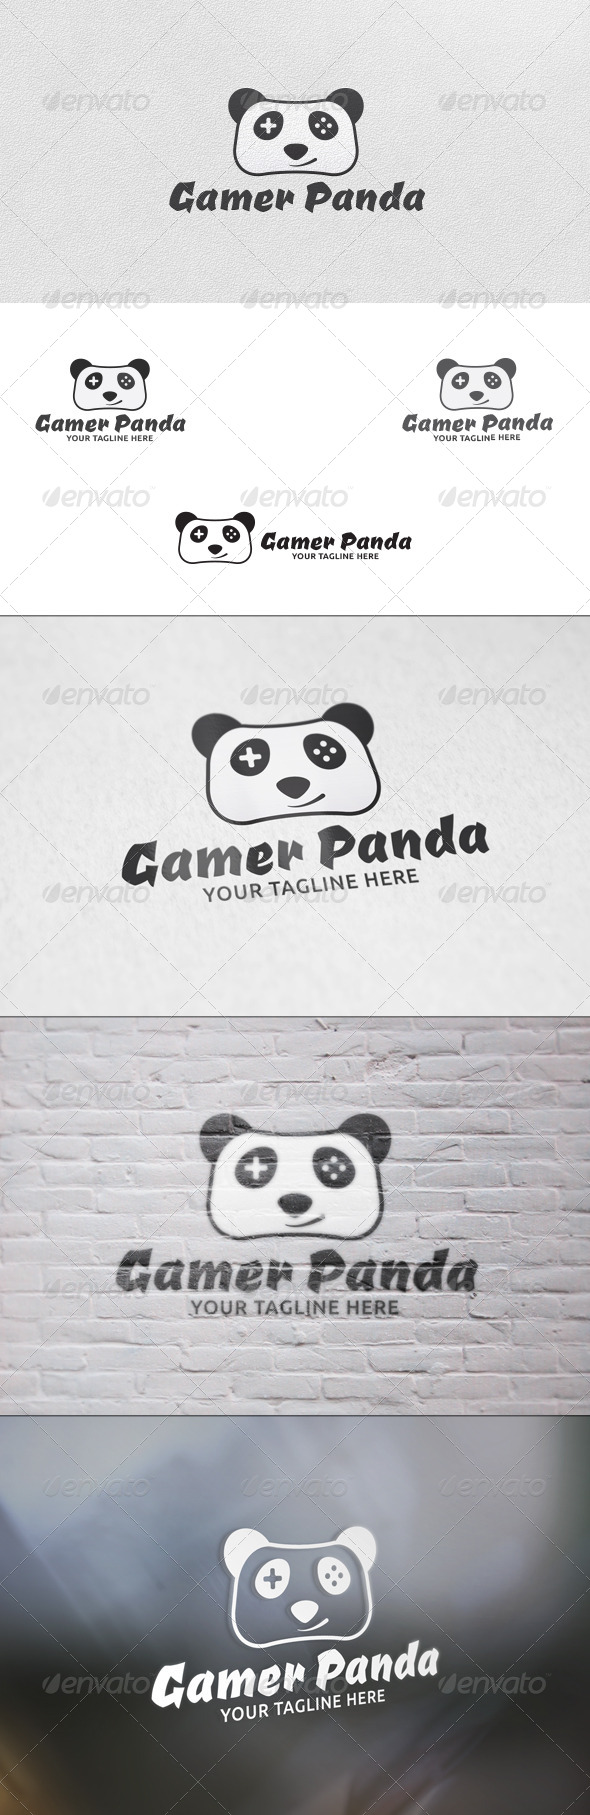 Gamer Panda - Logo Template